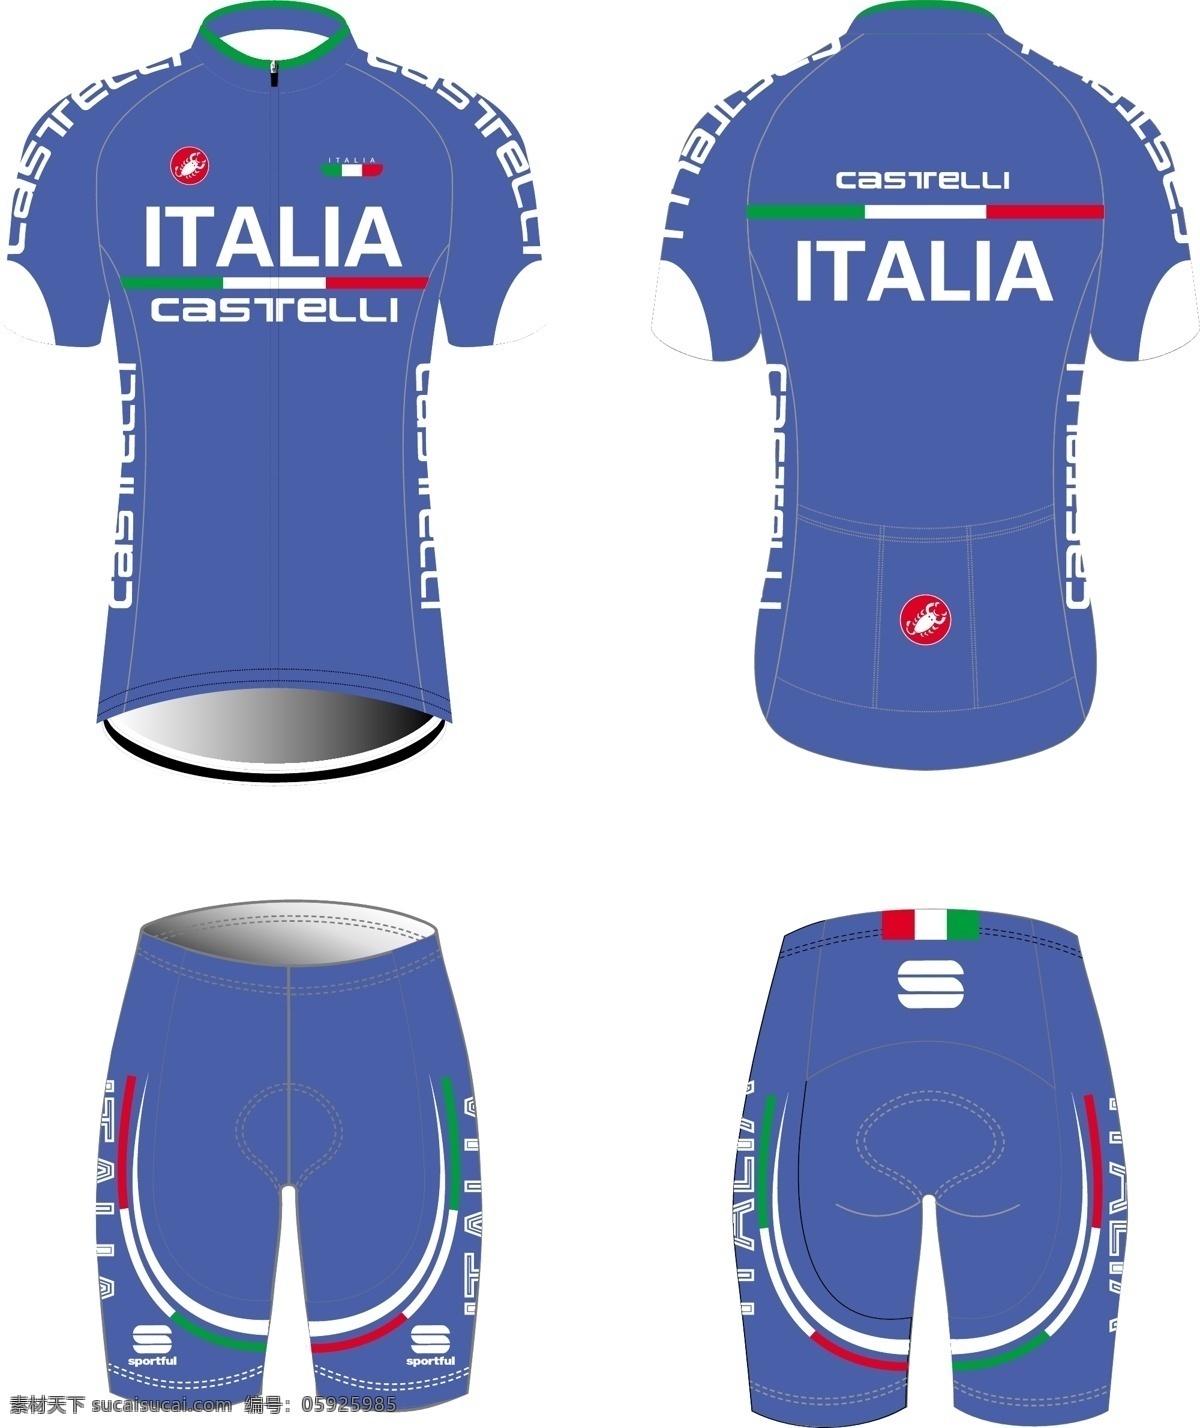 骑行服 环法 比赛 castelli 自行车比赛 服装设计